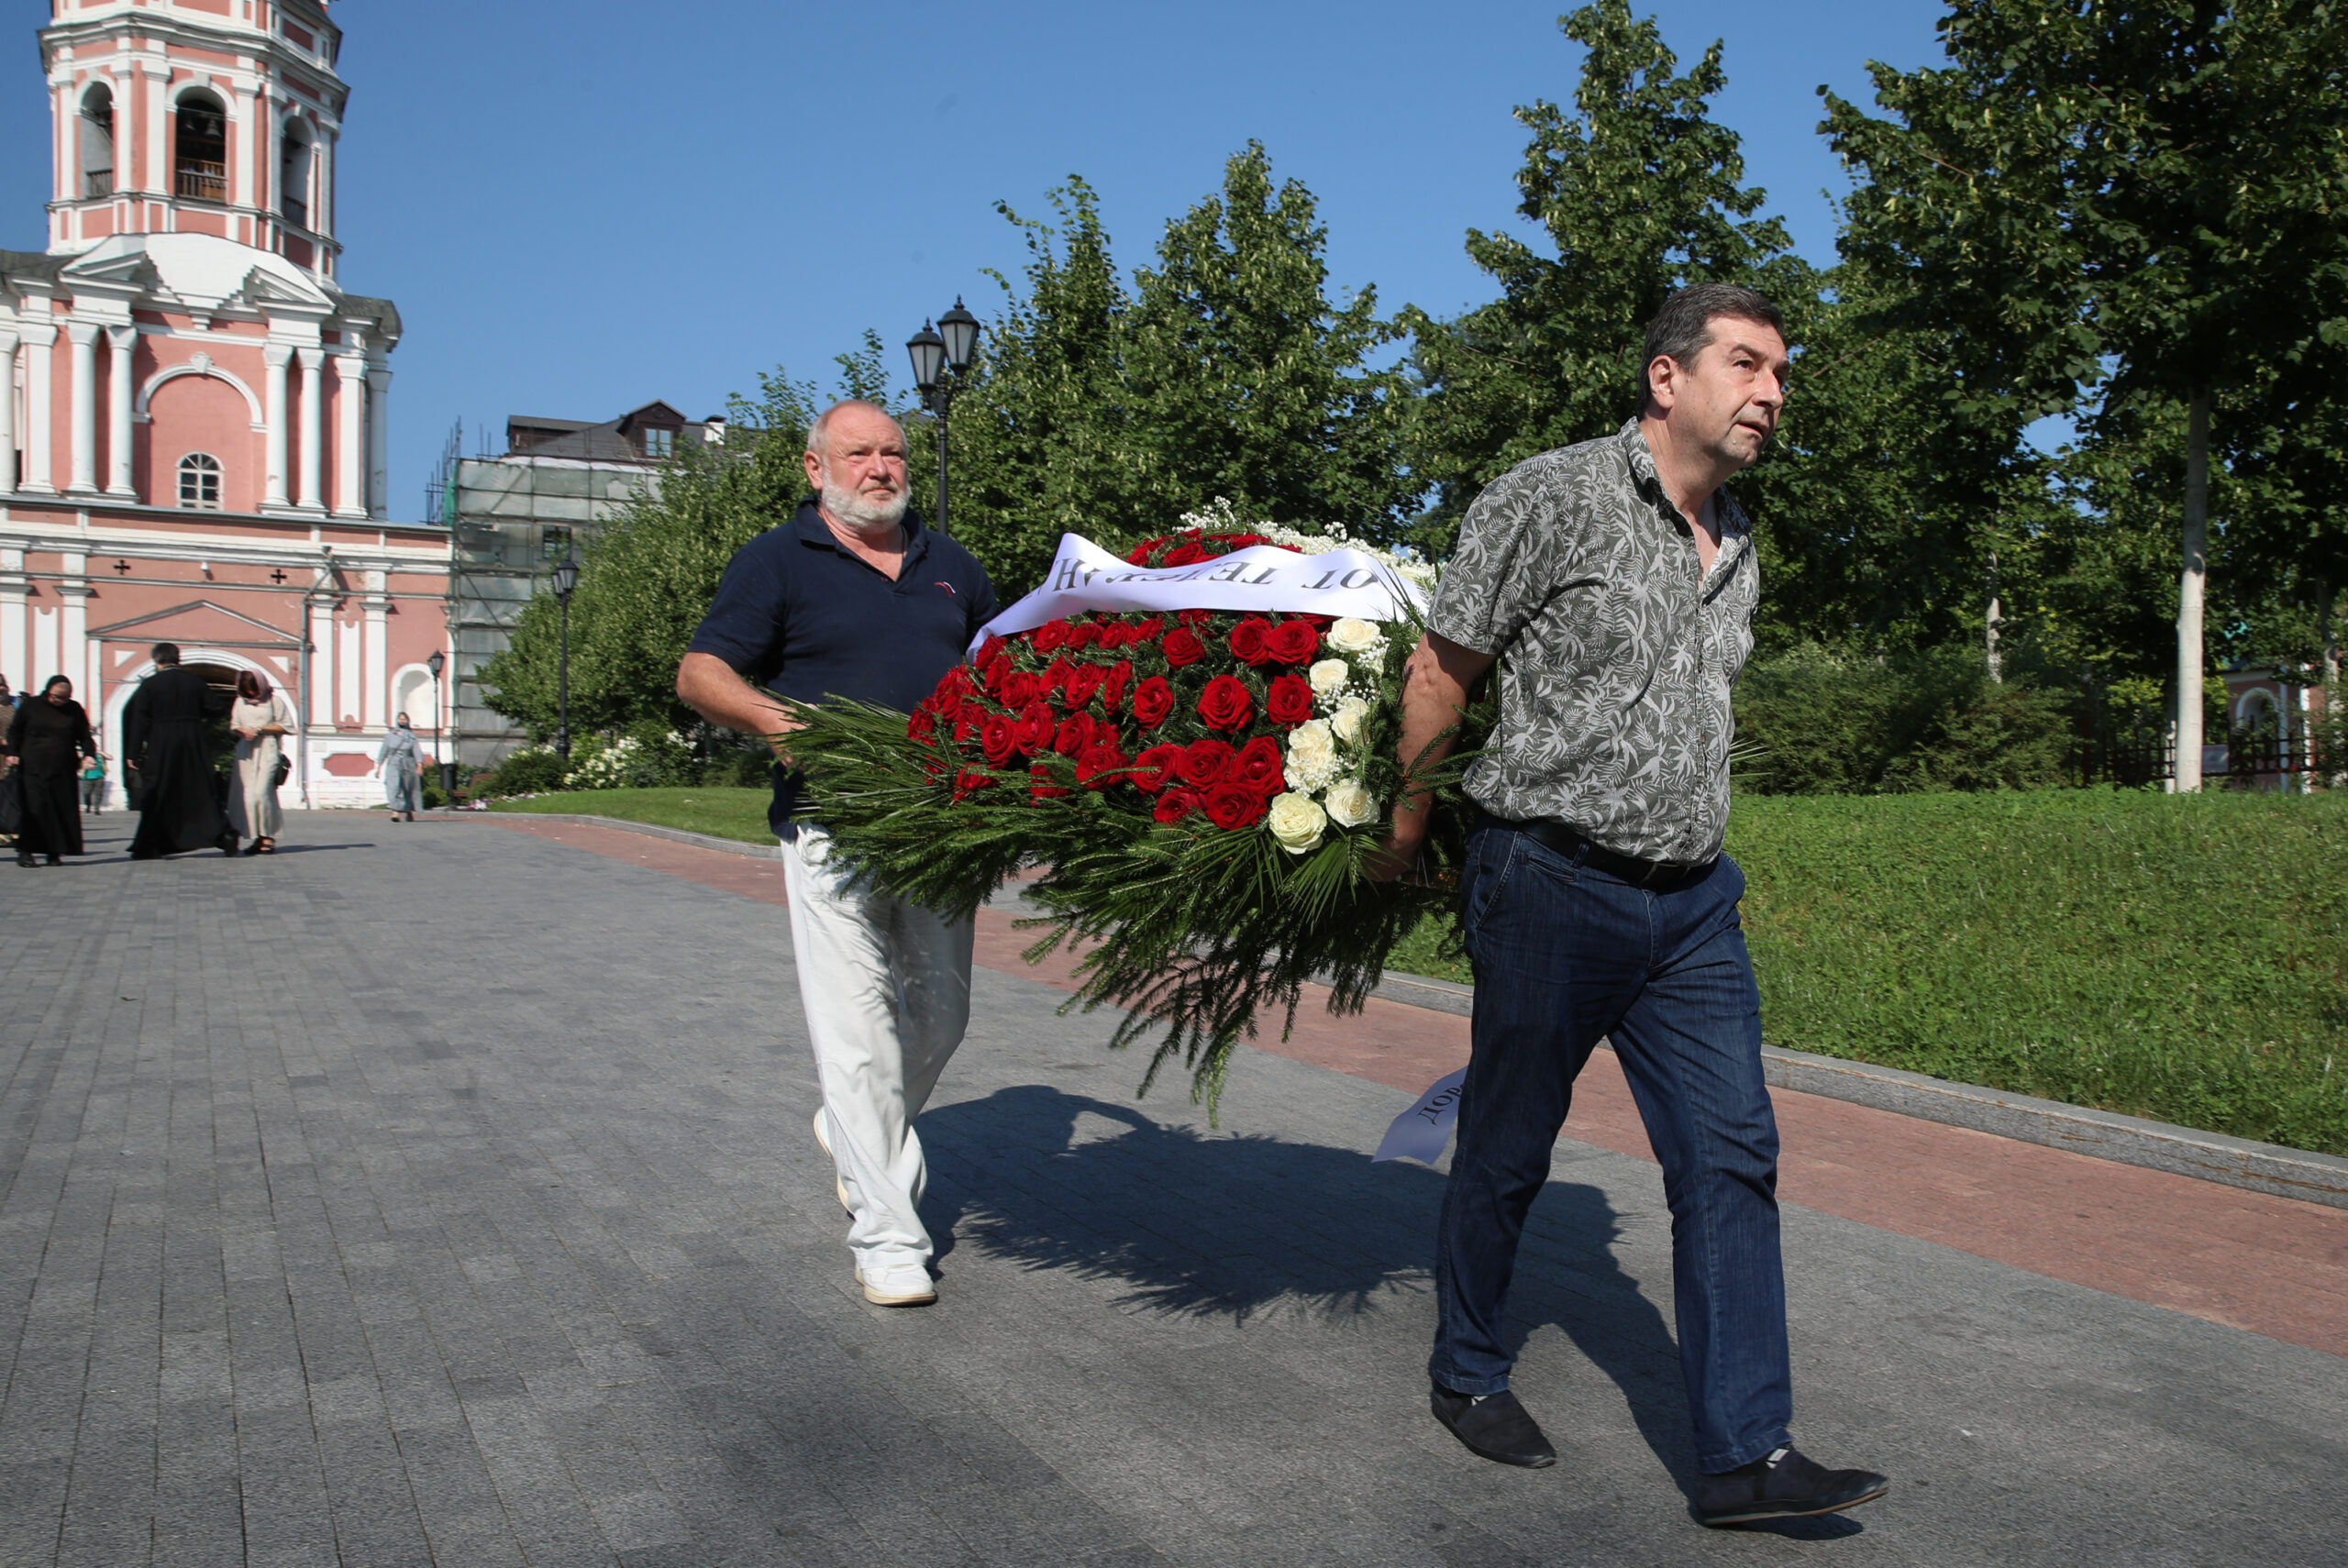 Участники церемонии прощания с Мамоновым несут похоронный венок. Фото Vyacheslav Prokofyev/TASS/Scanpix/Leta